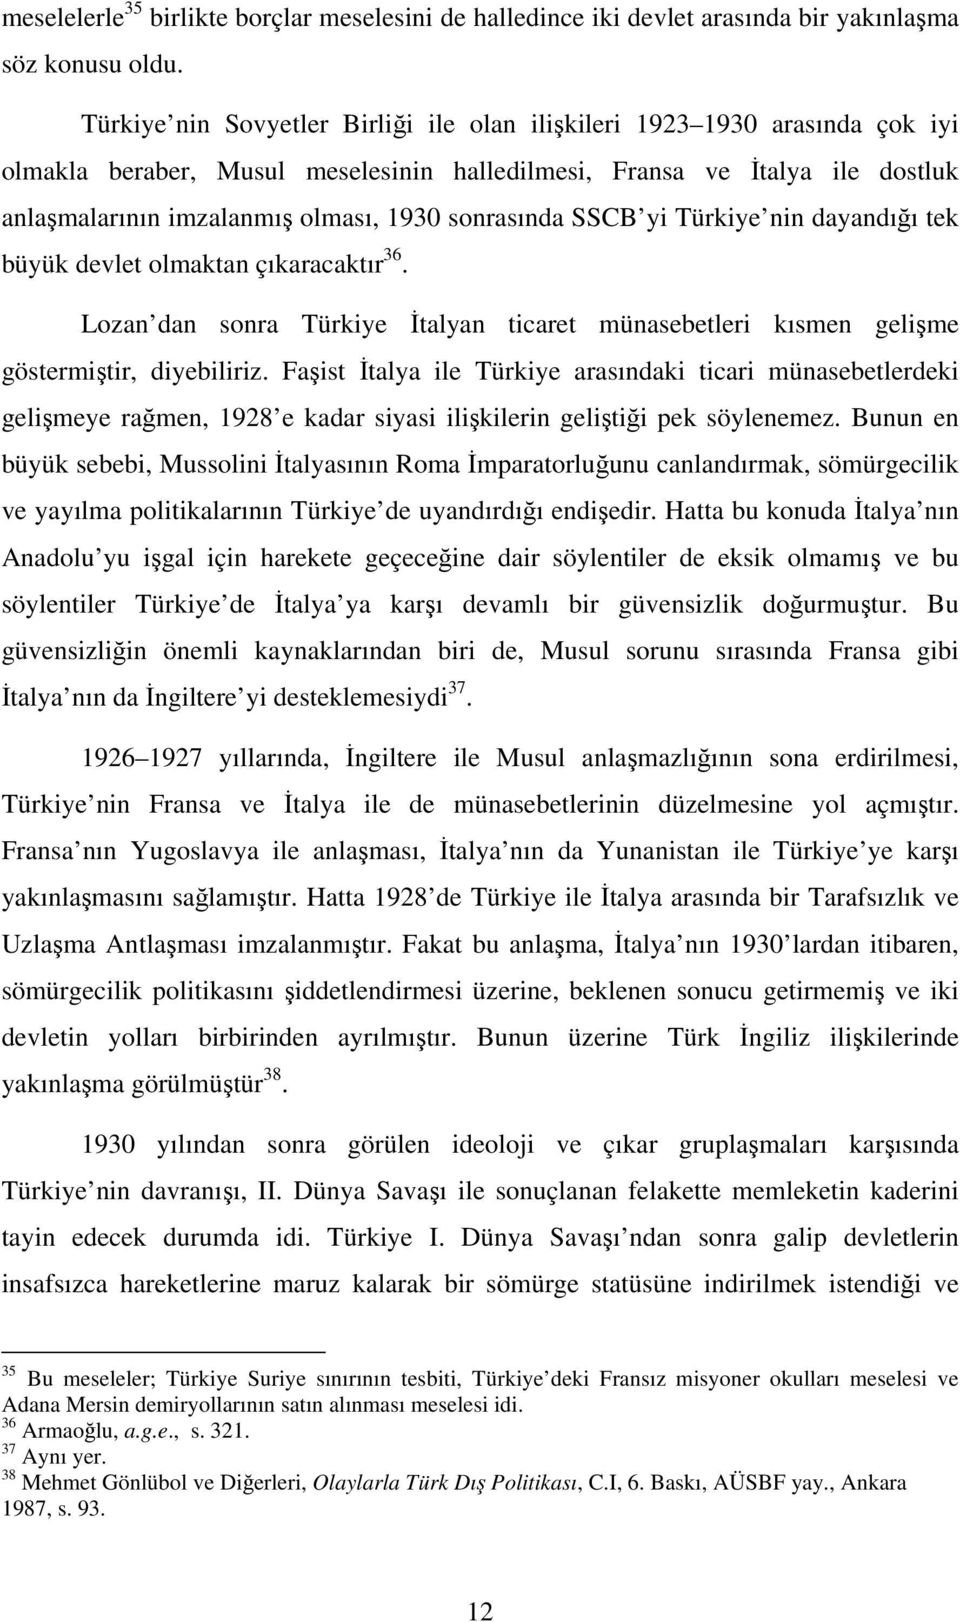 SSCB yi Türkiye nin dayandıı tek büyük devlet olmaktan çıkaracaktır 36. Lozan dan sonra Türkiye talyan ticaret münasebetleri kısmen gelime göstermitir, diyebiliriz.